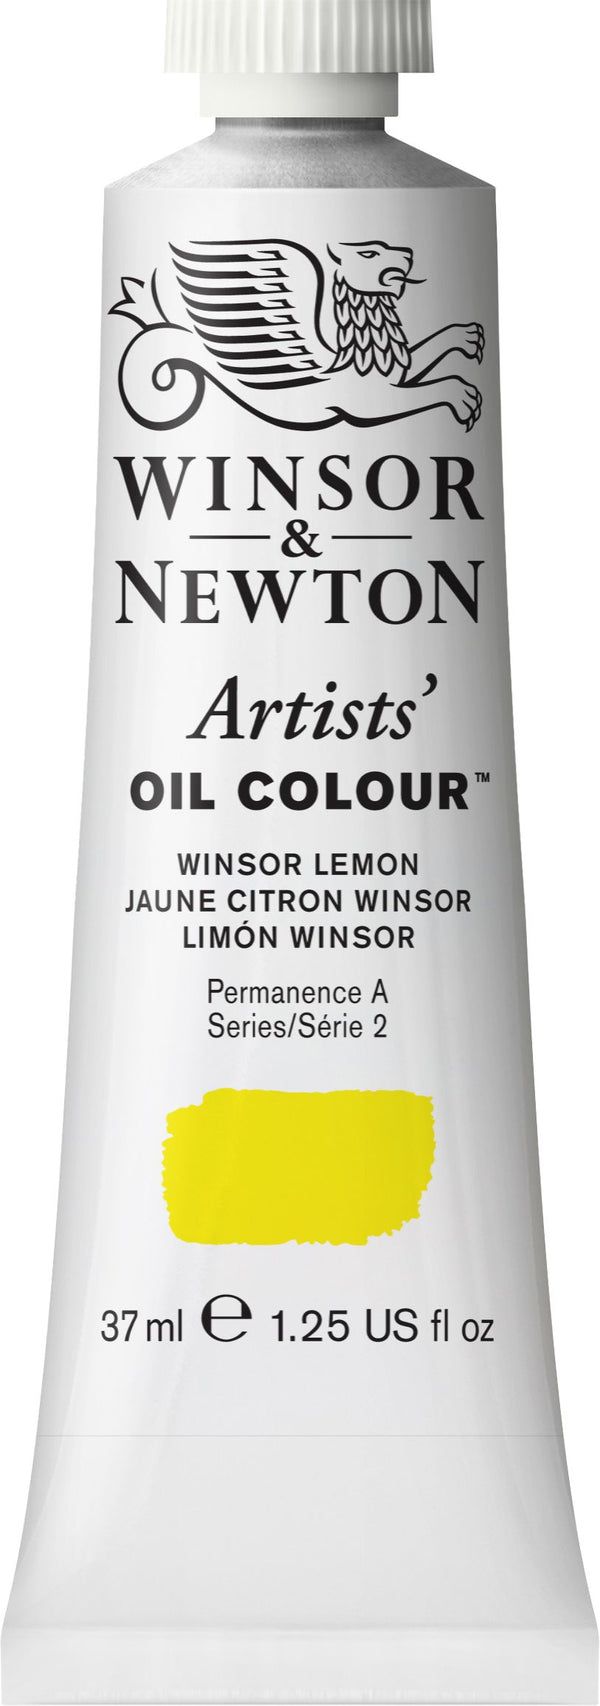 Winsor Newton Artist Oil Winsor Lemon 722 - Series 2 - 37ml tube